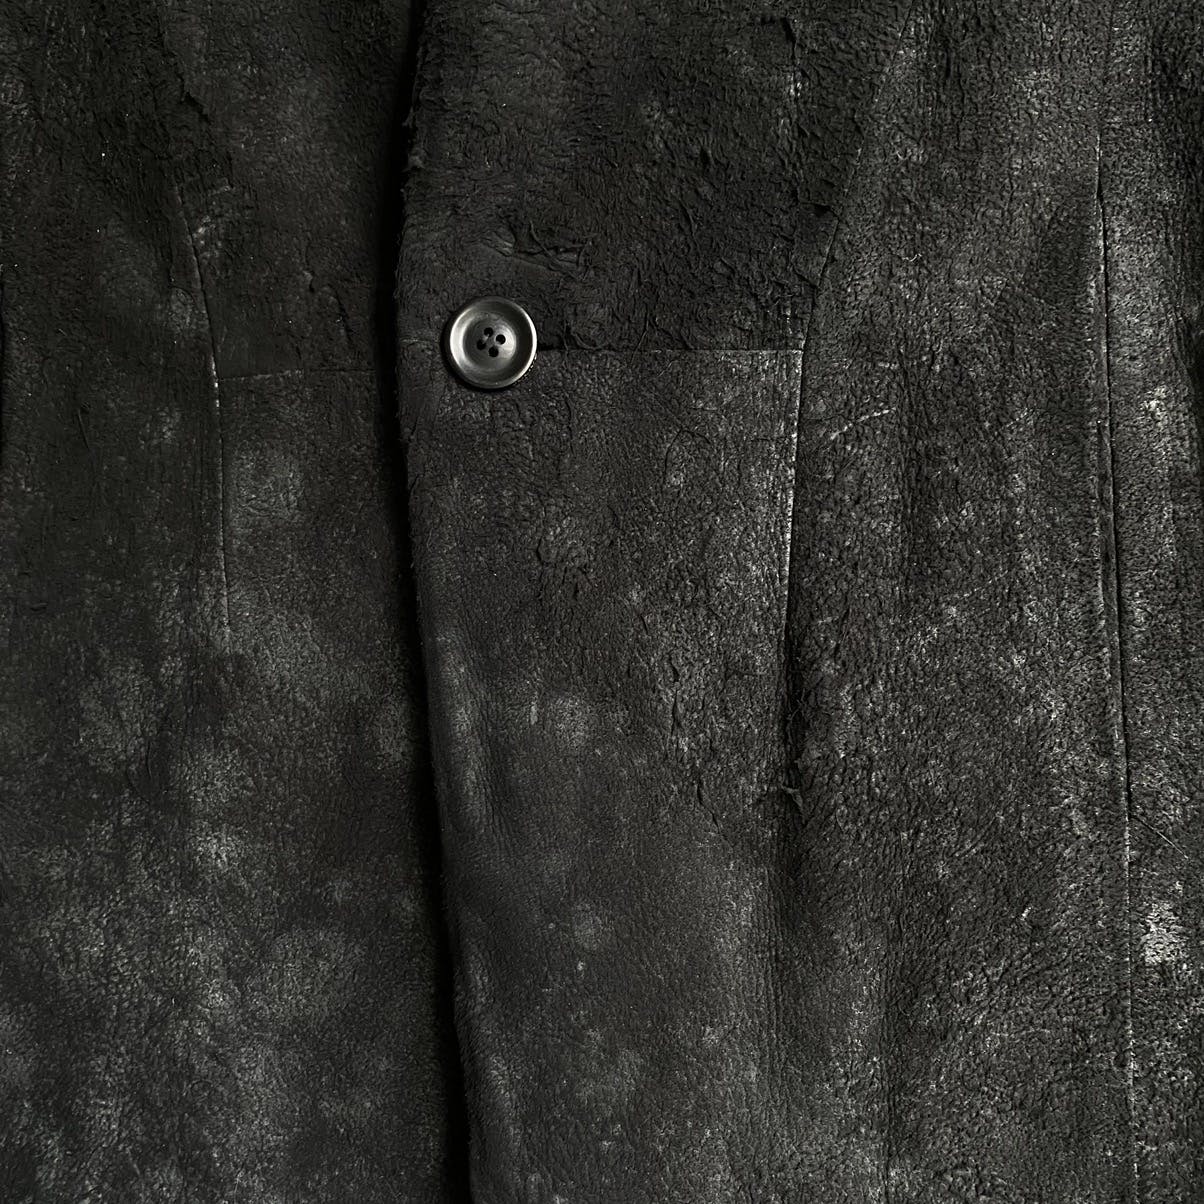 FW13-14 “Crack” Leather Jacket - 4